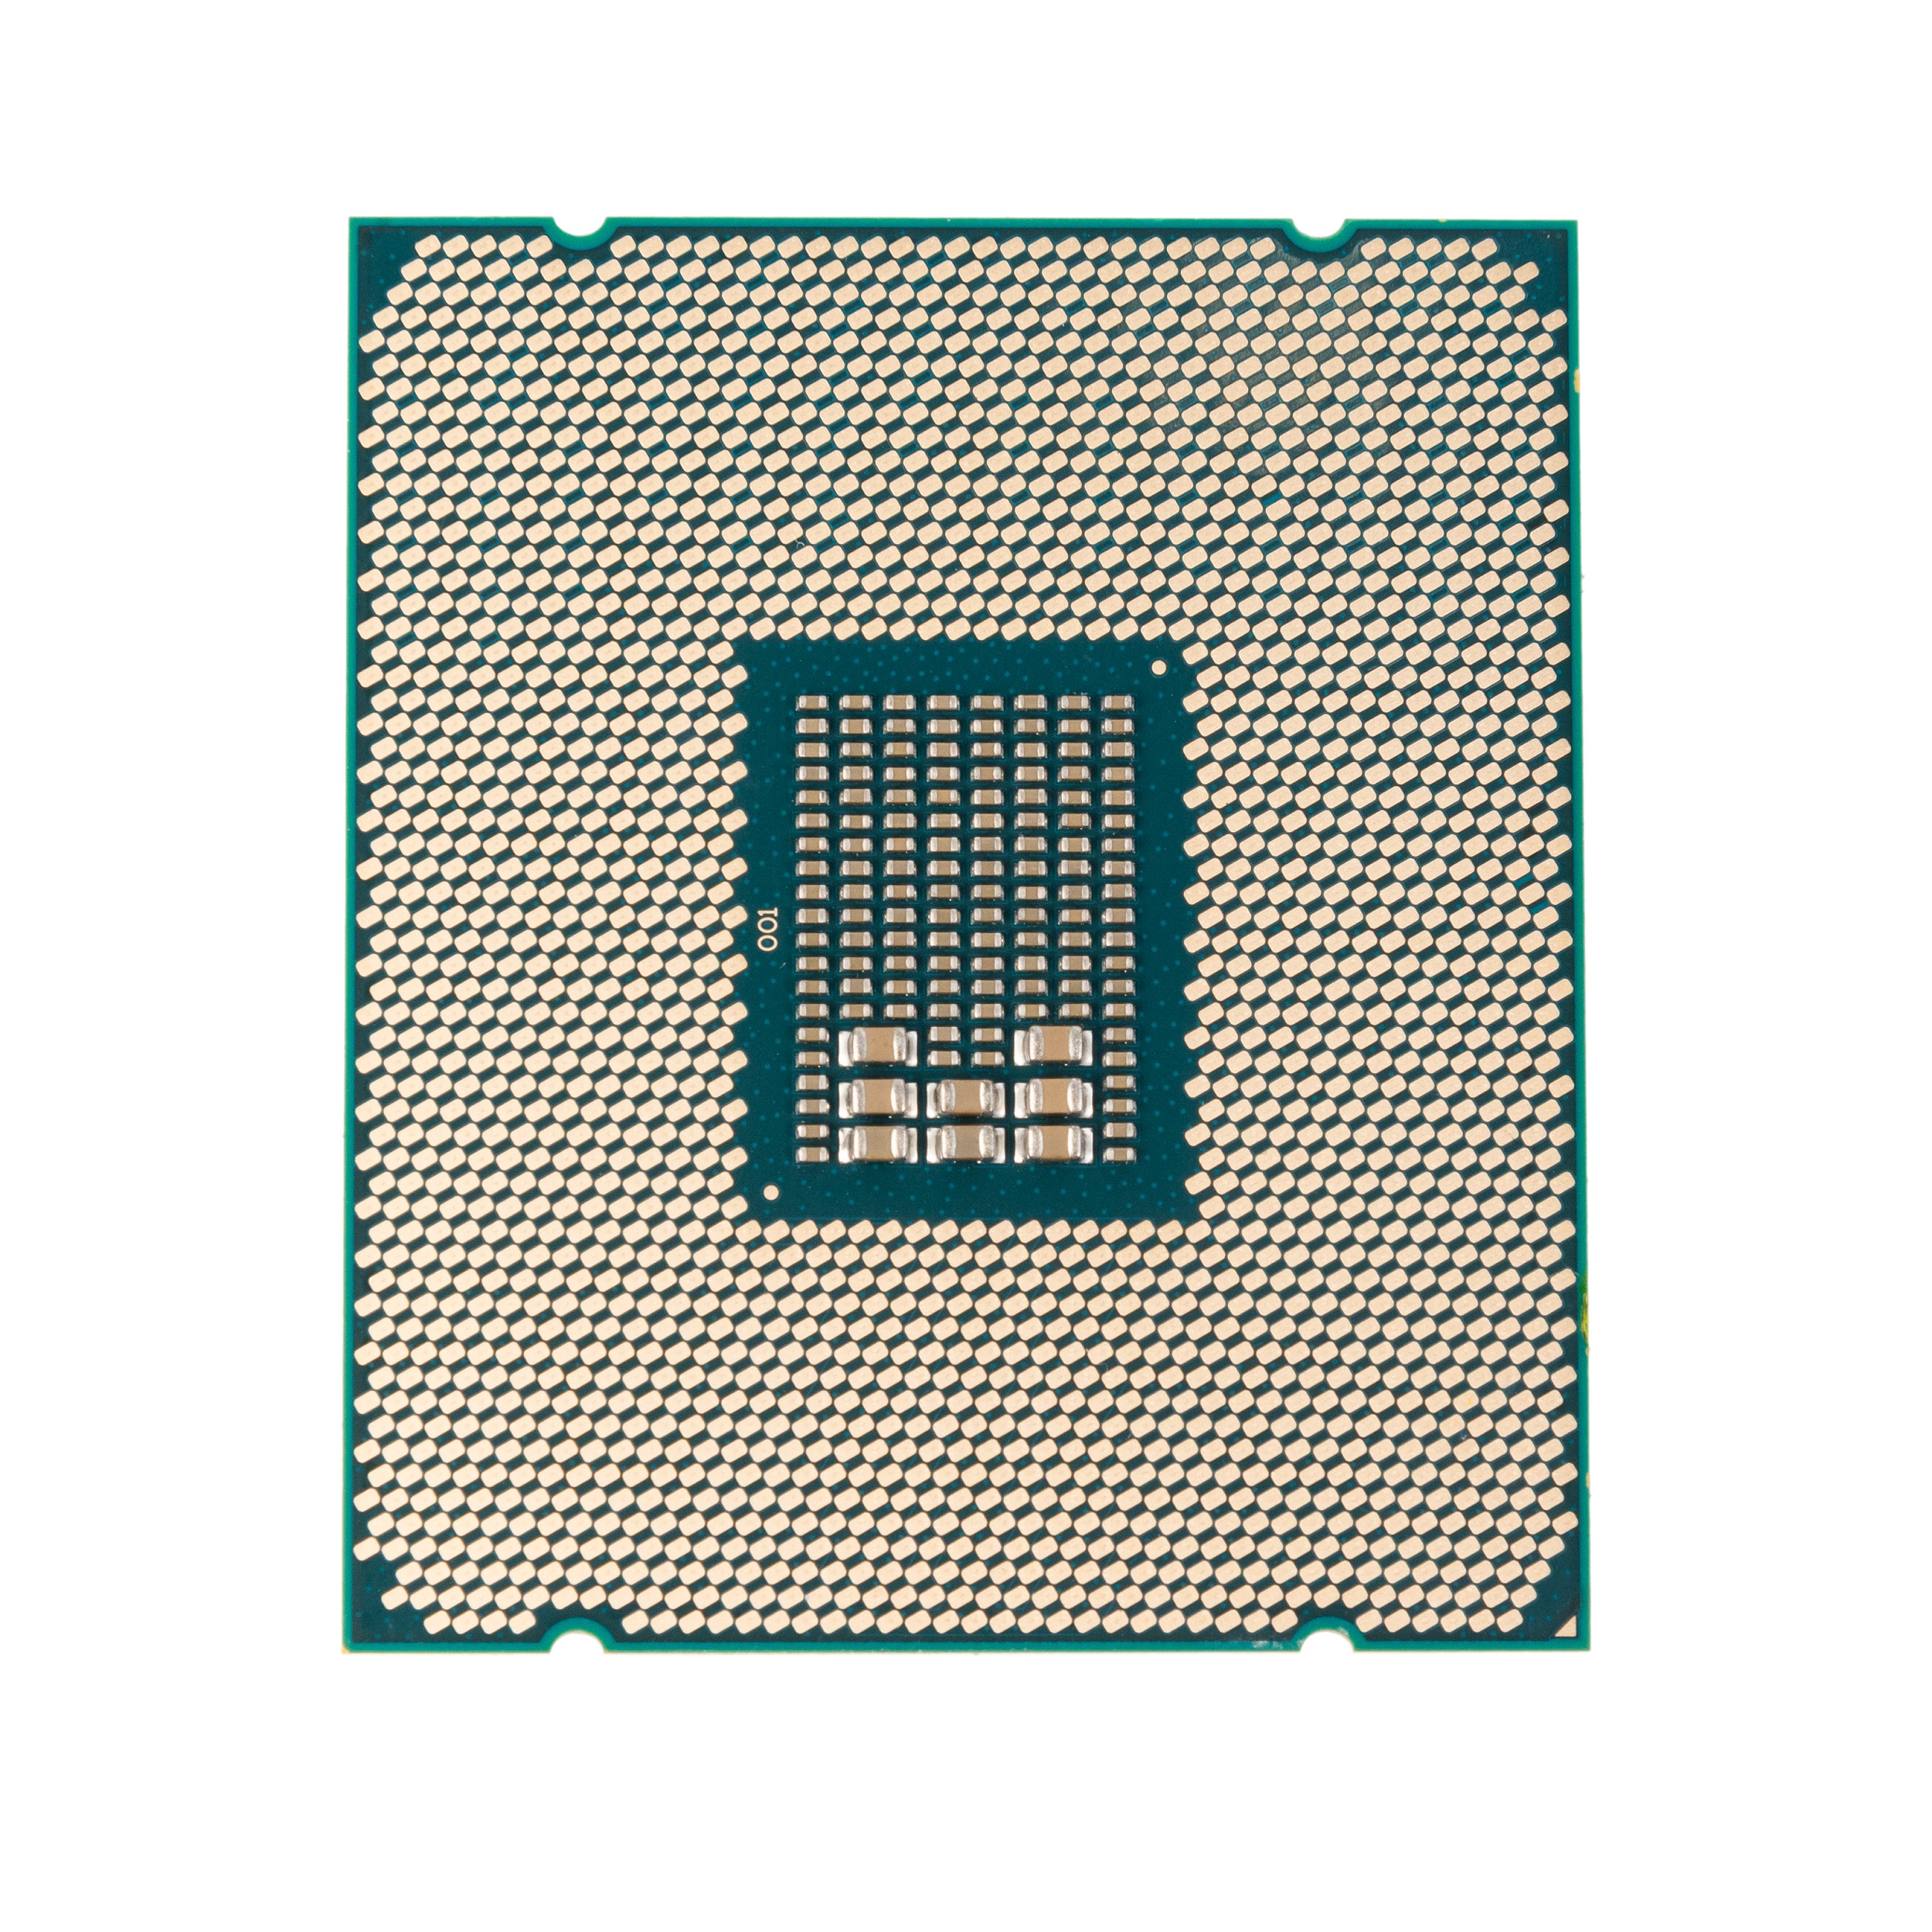 پردازنده مرکزی اینتل سری Xeon Broadwell مدل E5 2680 V4